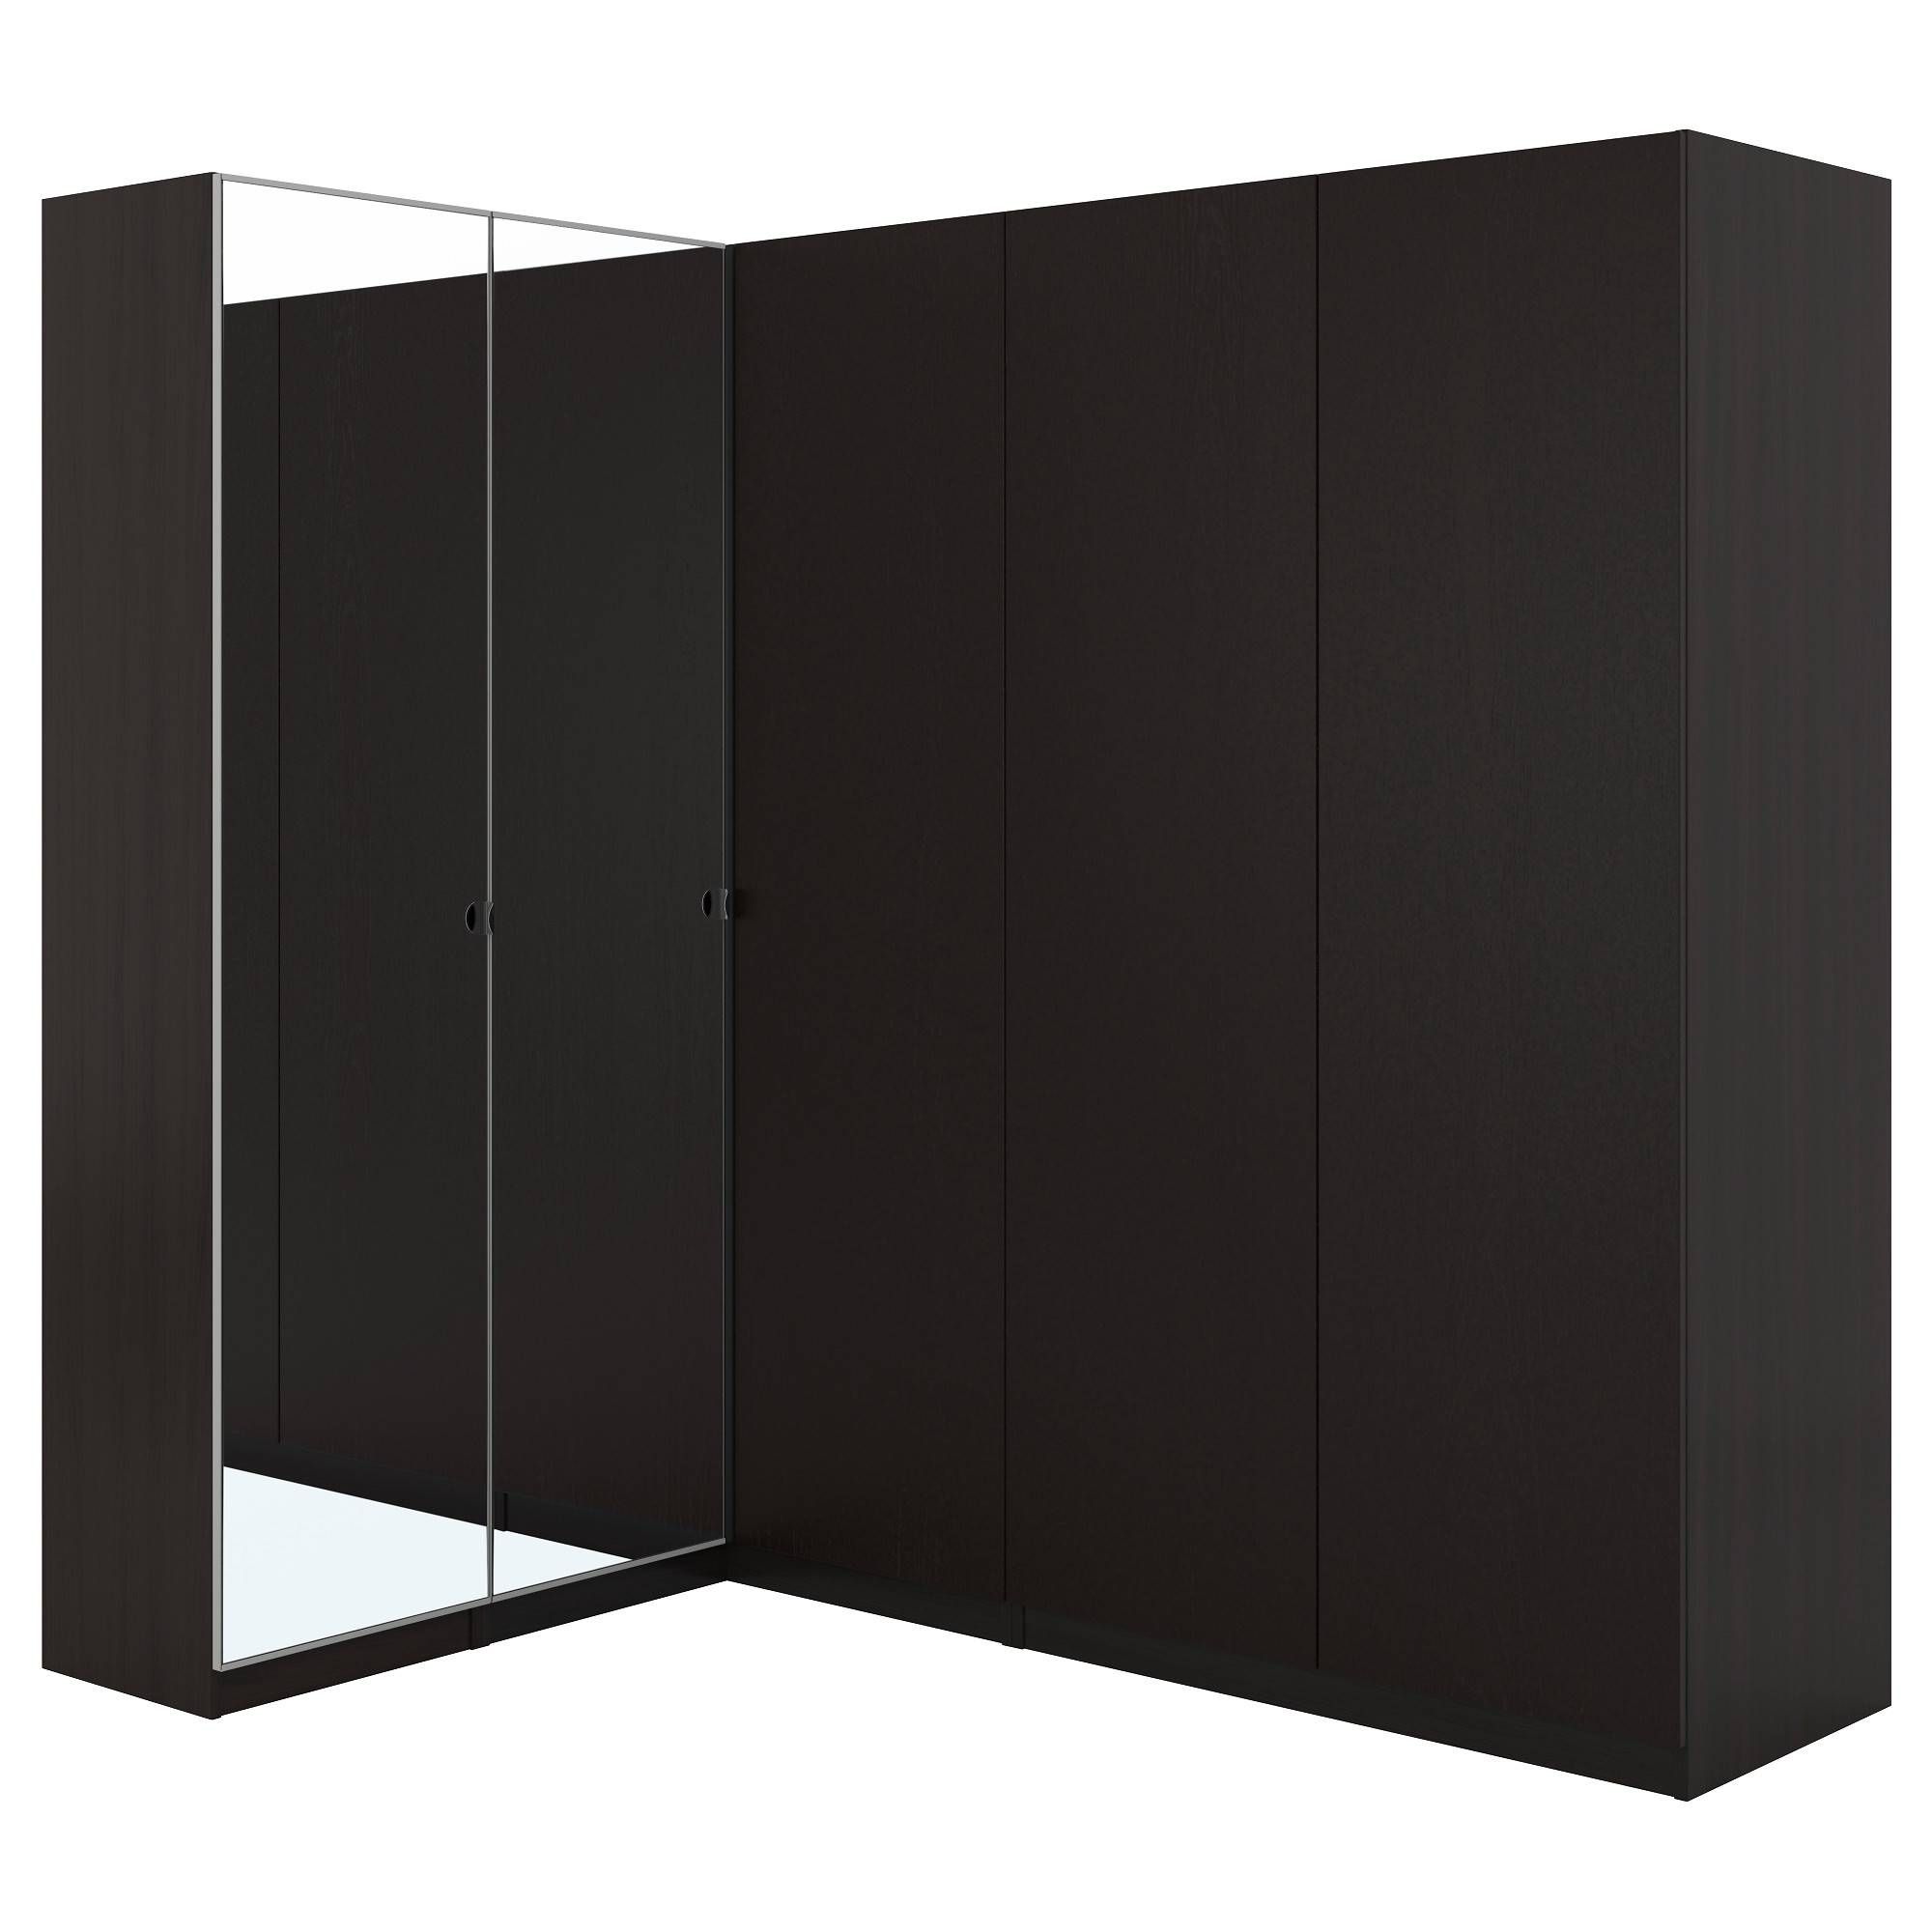 Pax Corner Wardrobe Black Brown/nexus Vikedal 160/188x201 Cm – Ikea Regarding Black Corner Wardrobes (Photo 9 of 15)